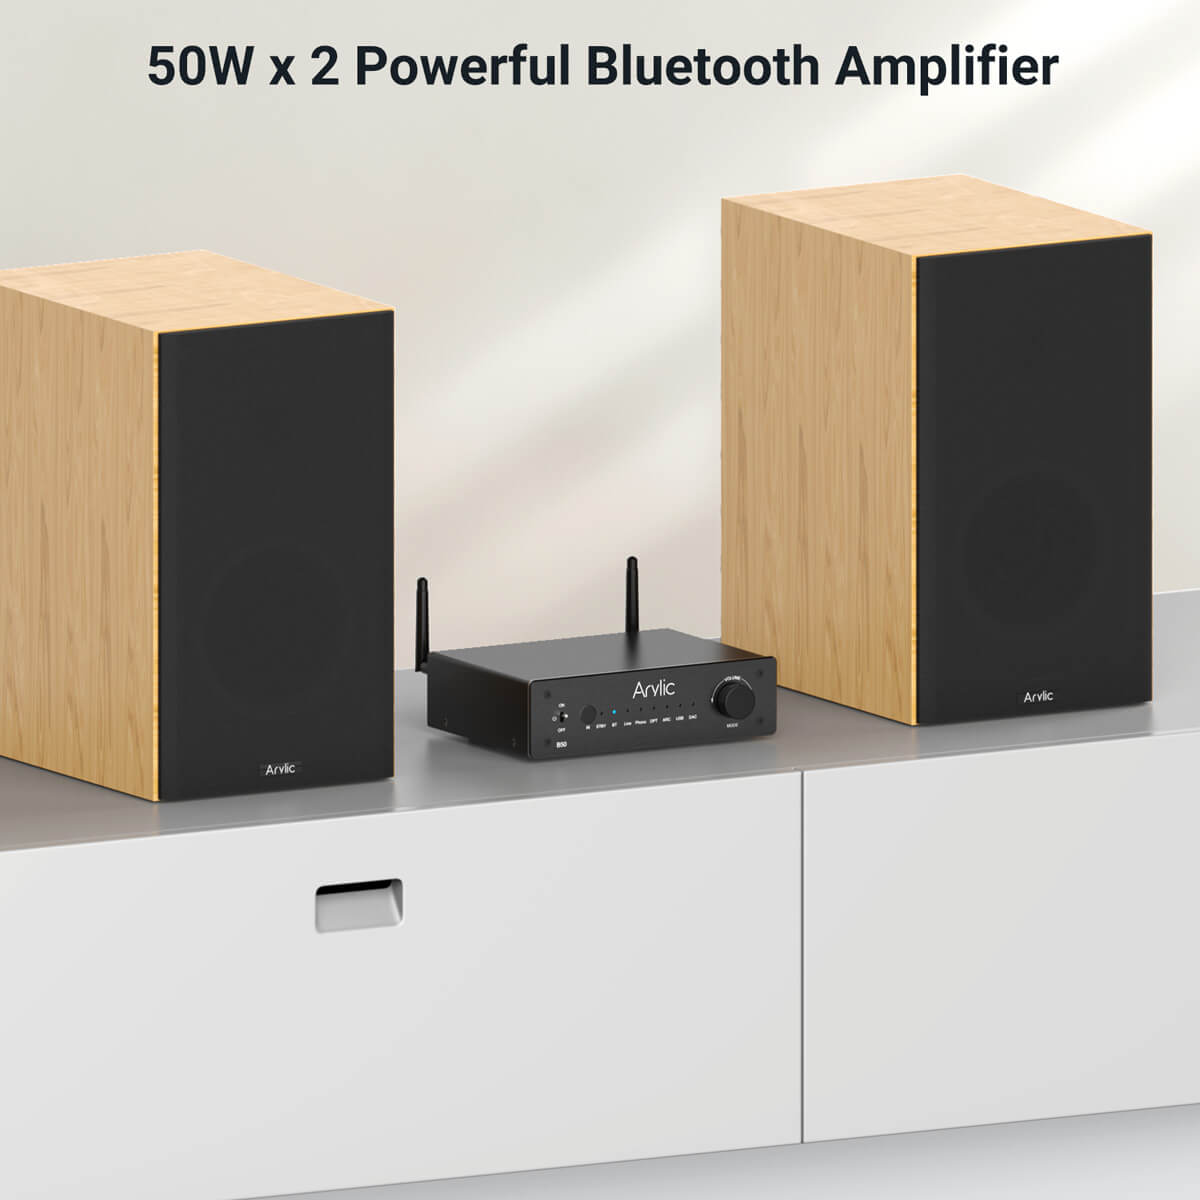 Power Bluetooth Amplifier